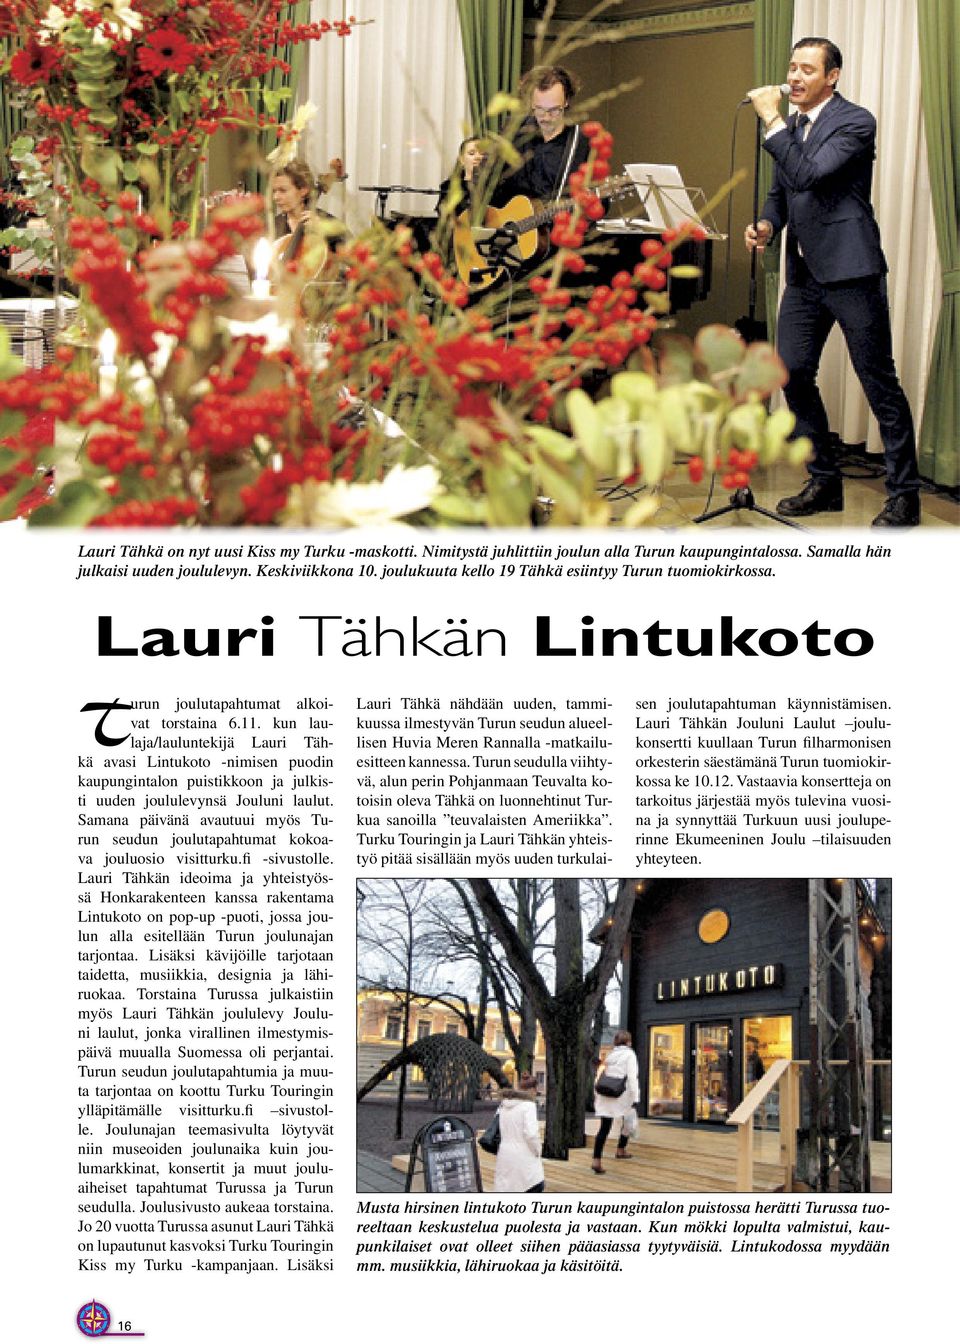 kun laulaja/lauluntekijä Lauri Tähkä avasi Lintukoto -nimisen puodin kaupungintalon puistikkoon ja julkisti uuden joululevynsä Jouluni laulut.